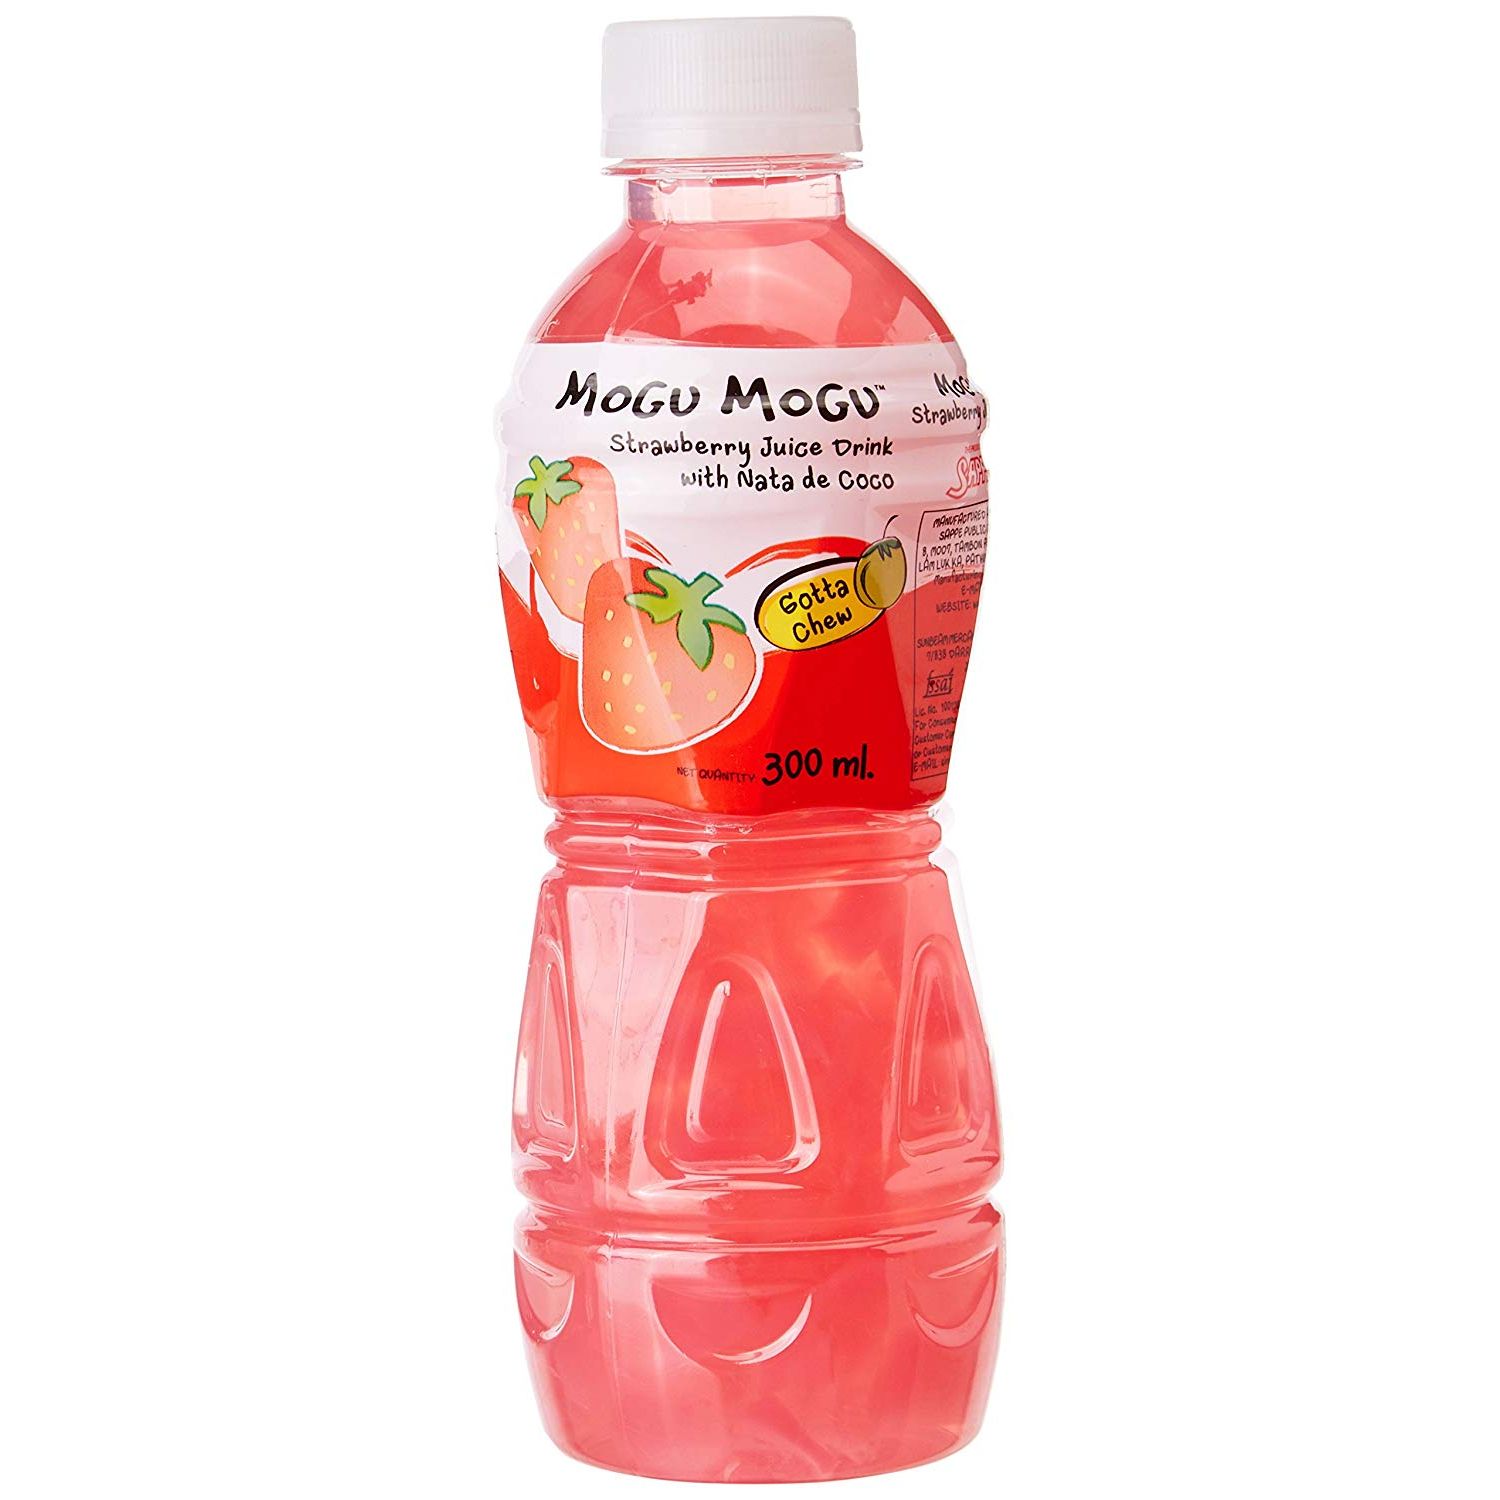 Mogu Mogu Strawberry Juice With Nata De Coco